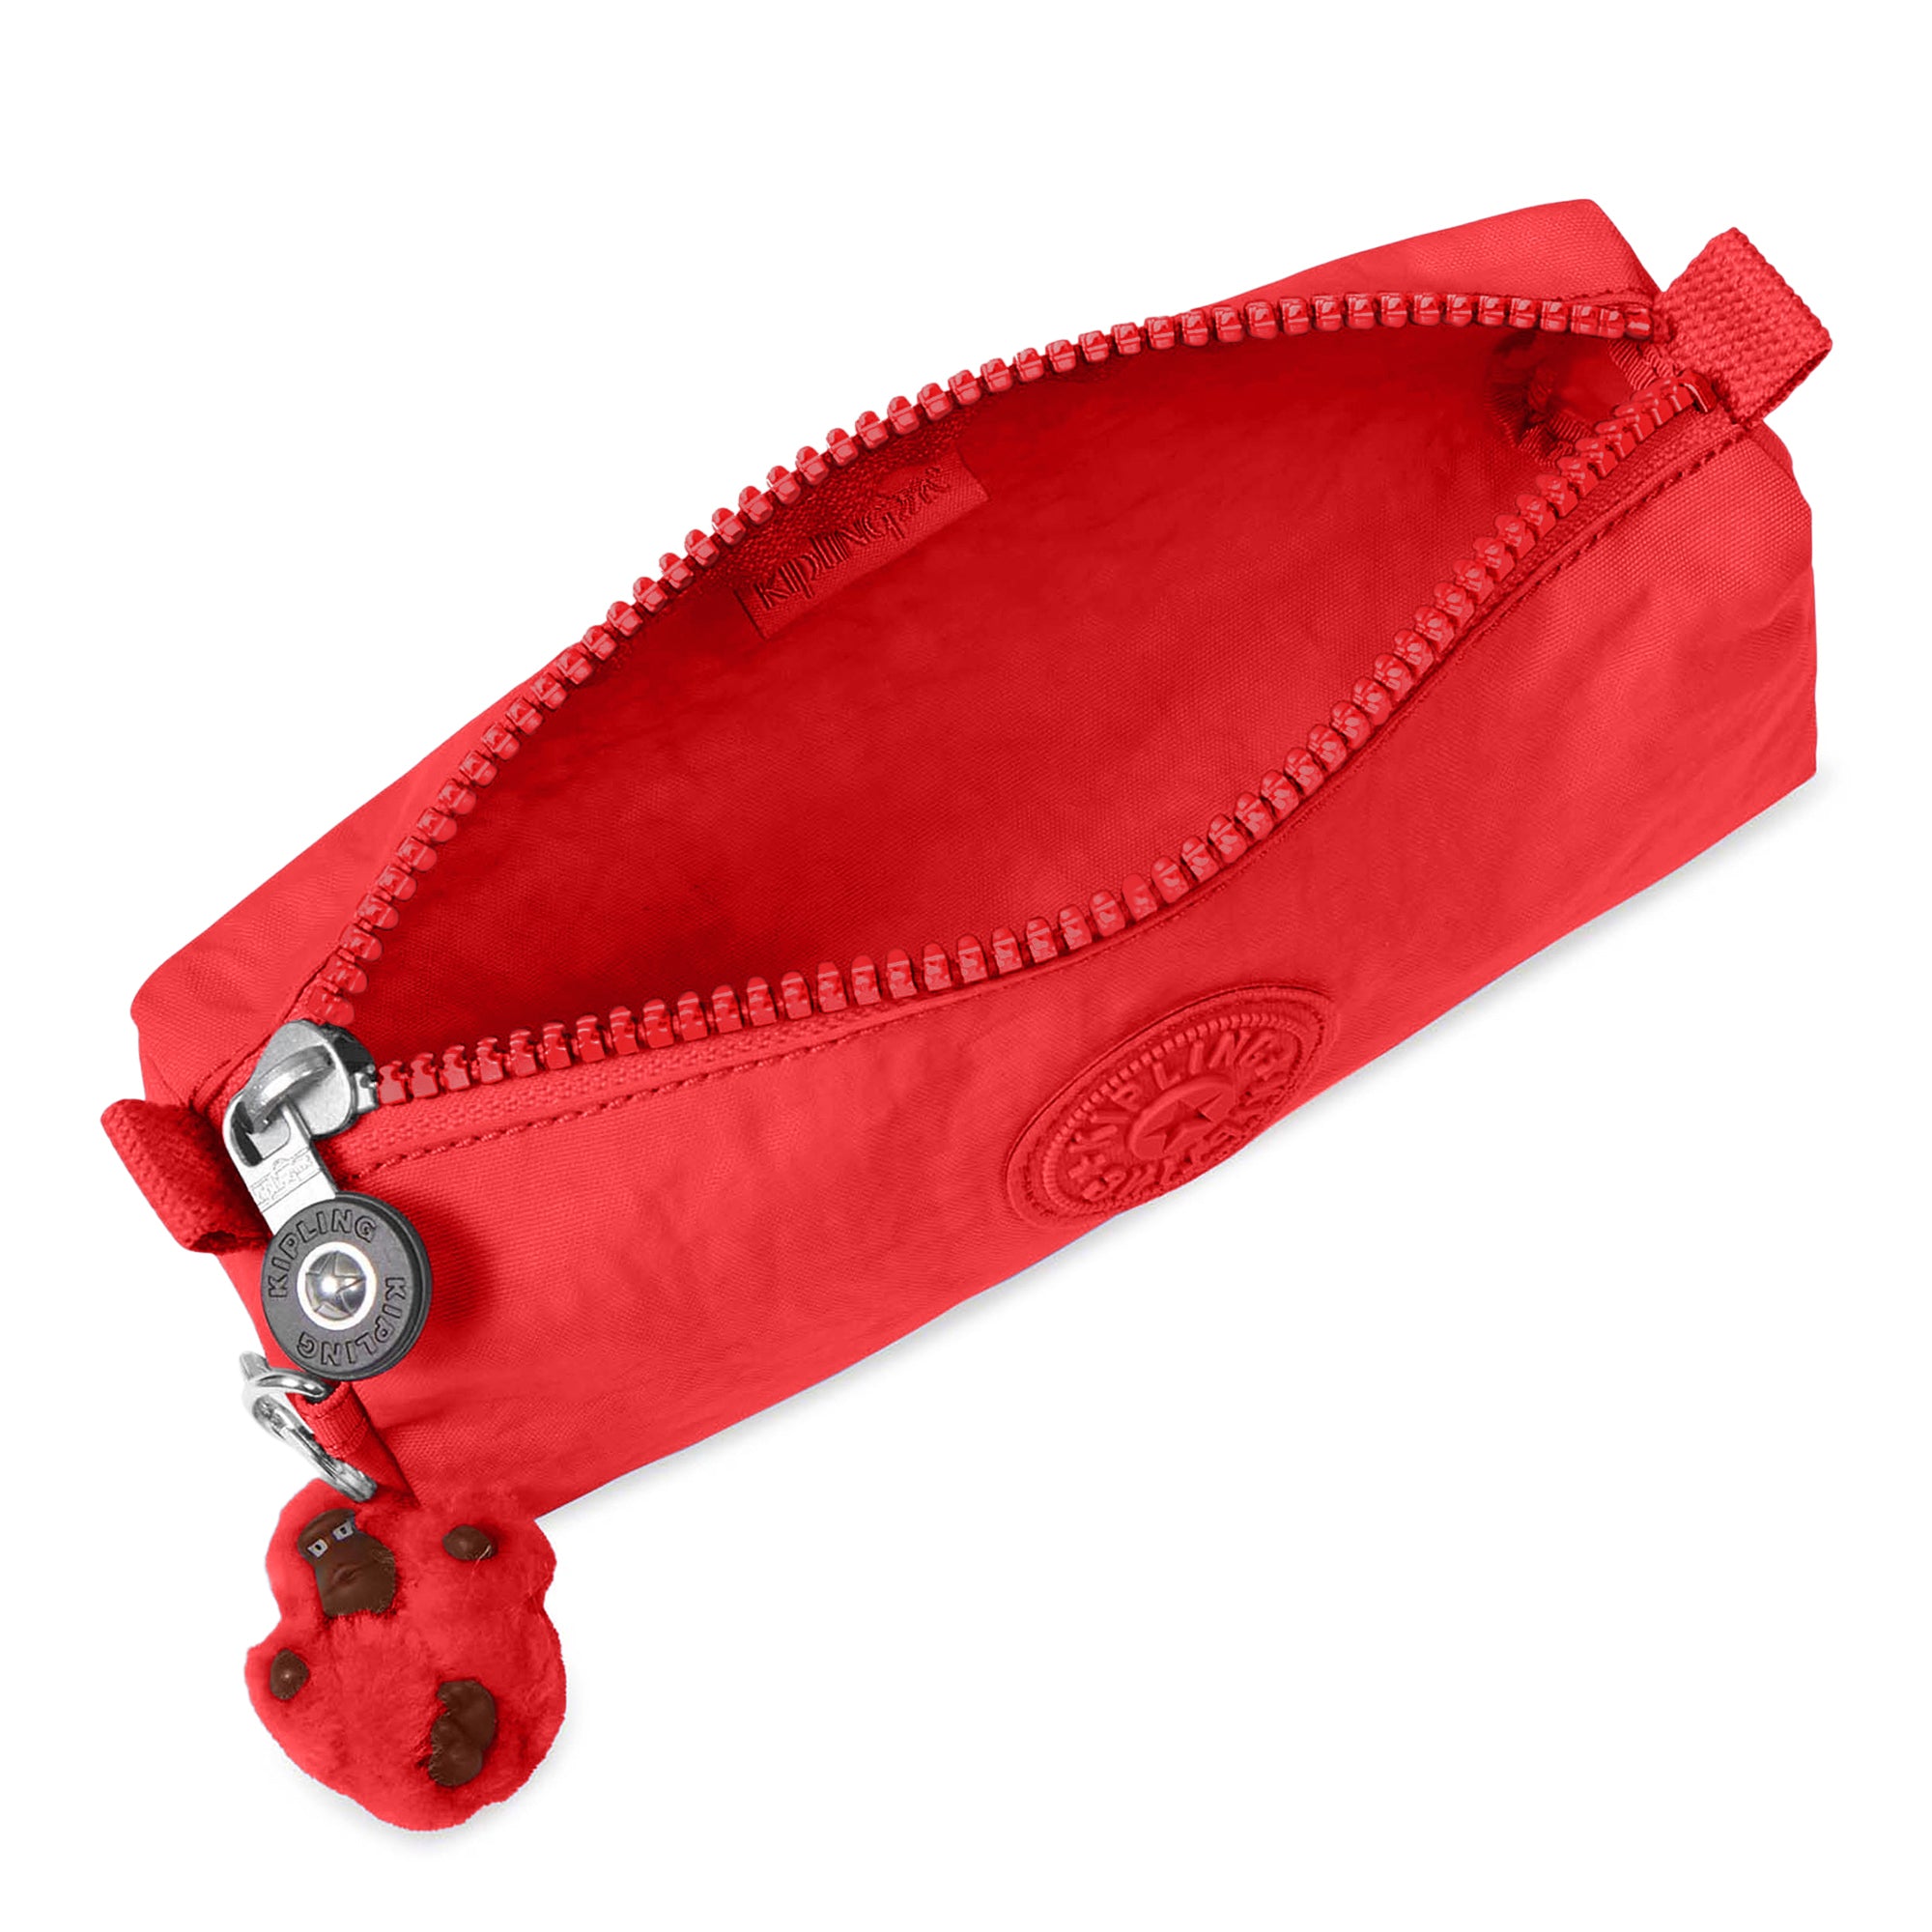 Kipling - 100 PENS - Large Pen Case - Happy Red C - (Red)